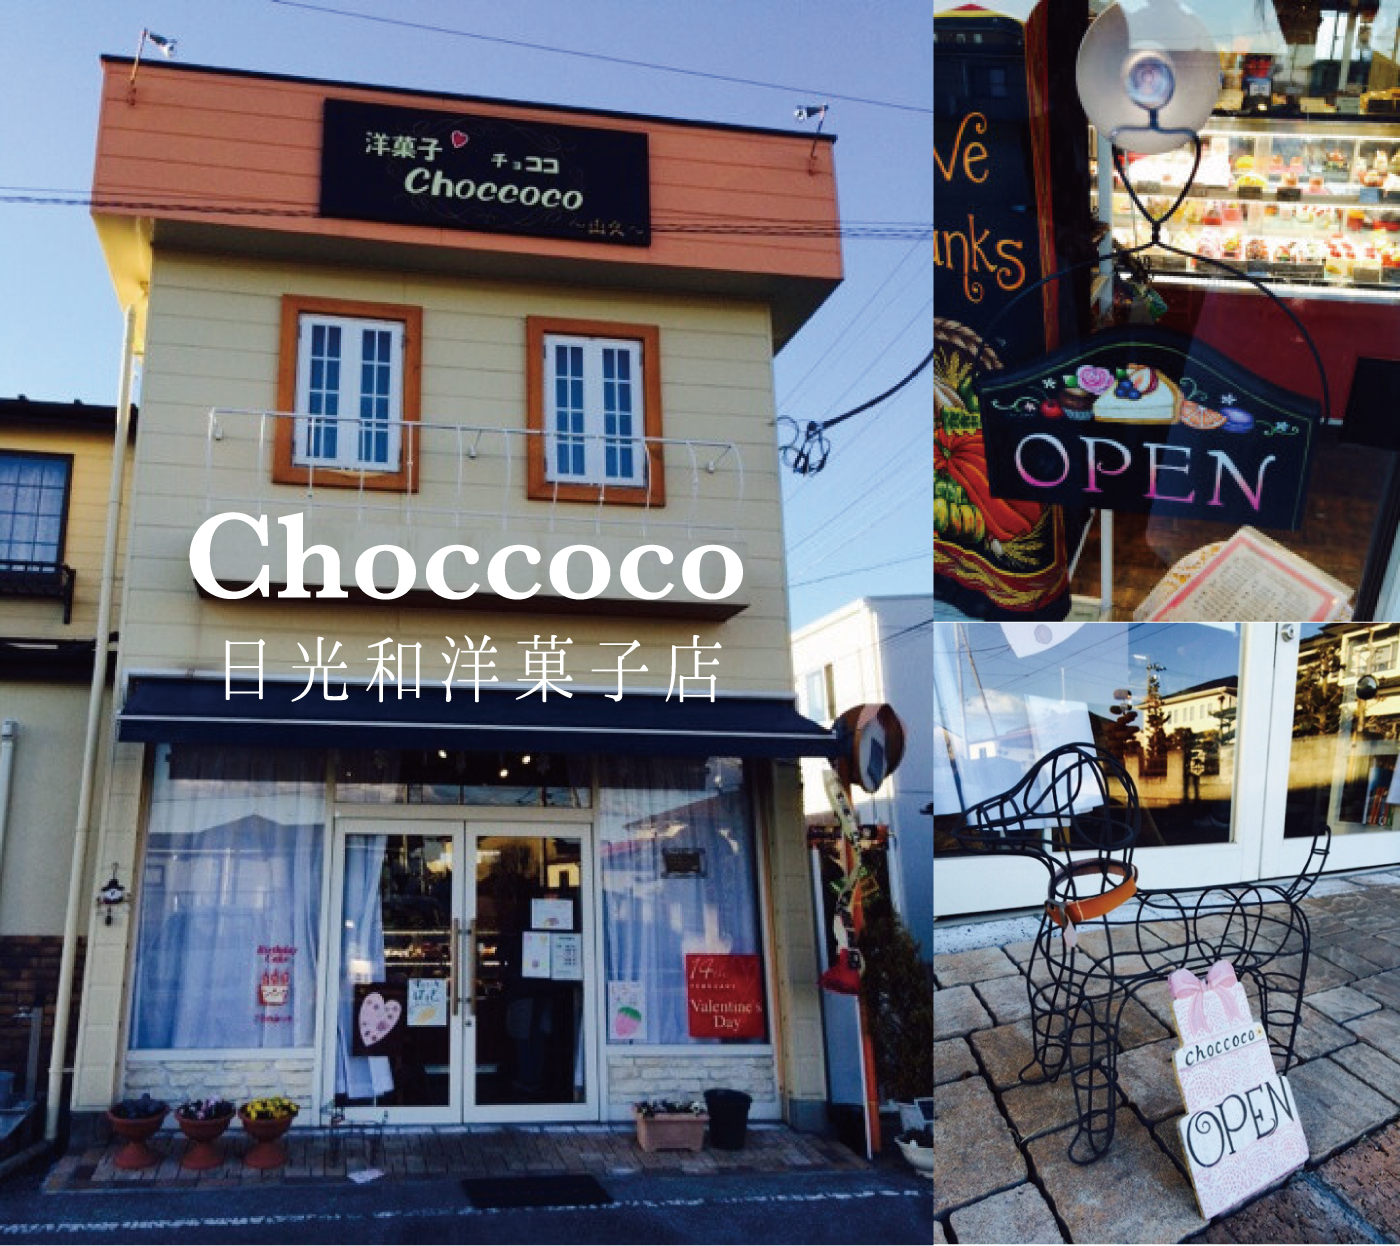 Choccoco 日光和洋菓子店